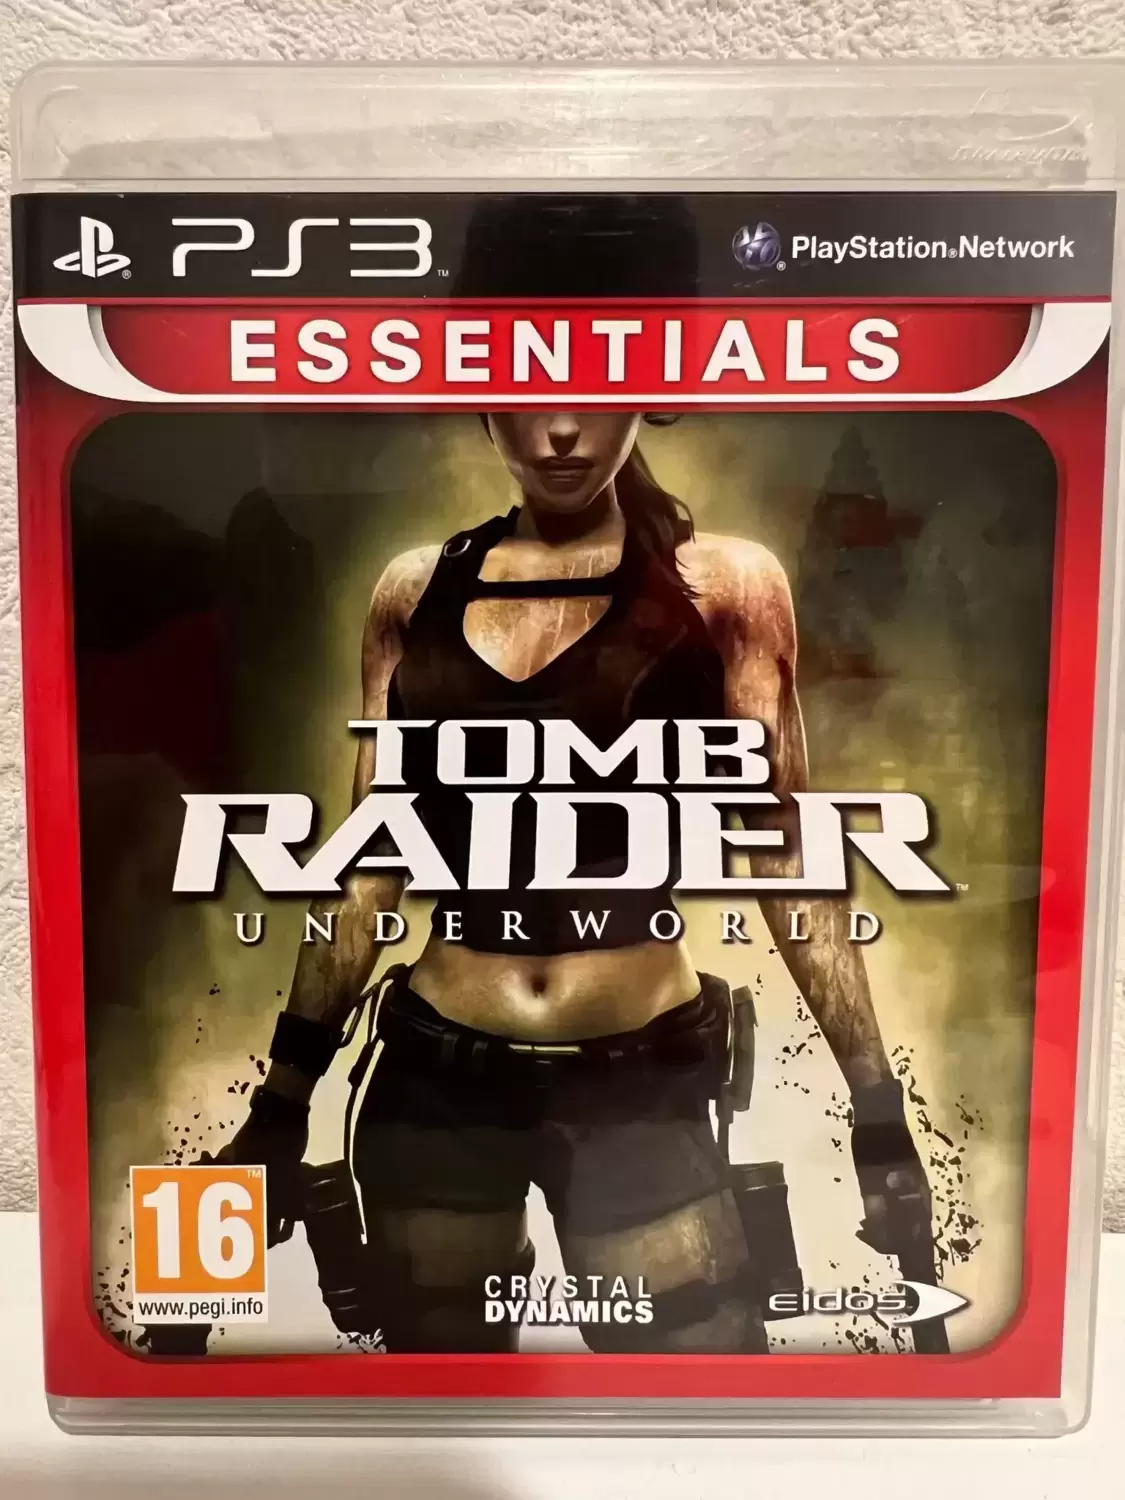 PS3 Games - Tomb Raider Underworld - Essentials